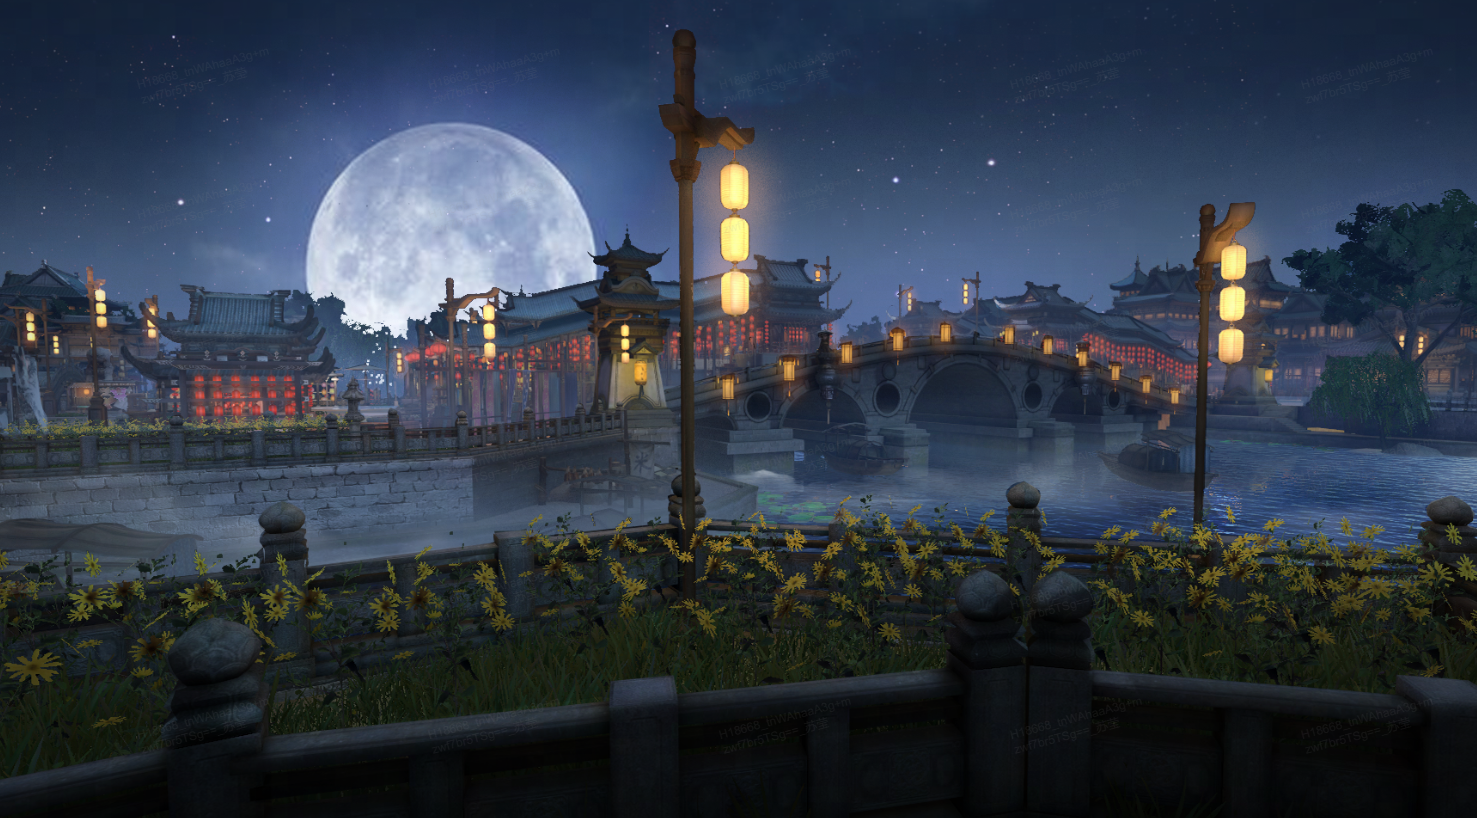 这是一幅亭台楼阁、古桥河畔的夜景图，满月高悬，灯火辉煌，反映出东方古典建筑之美。